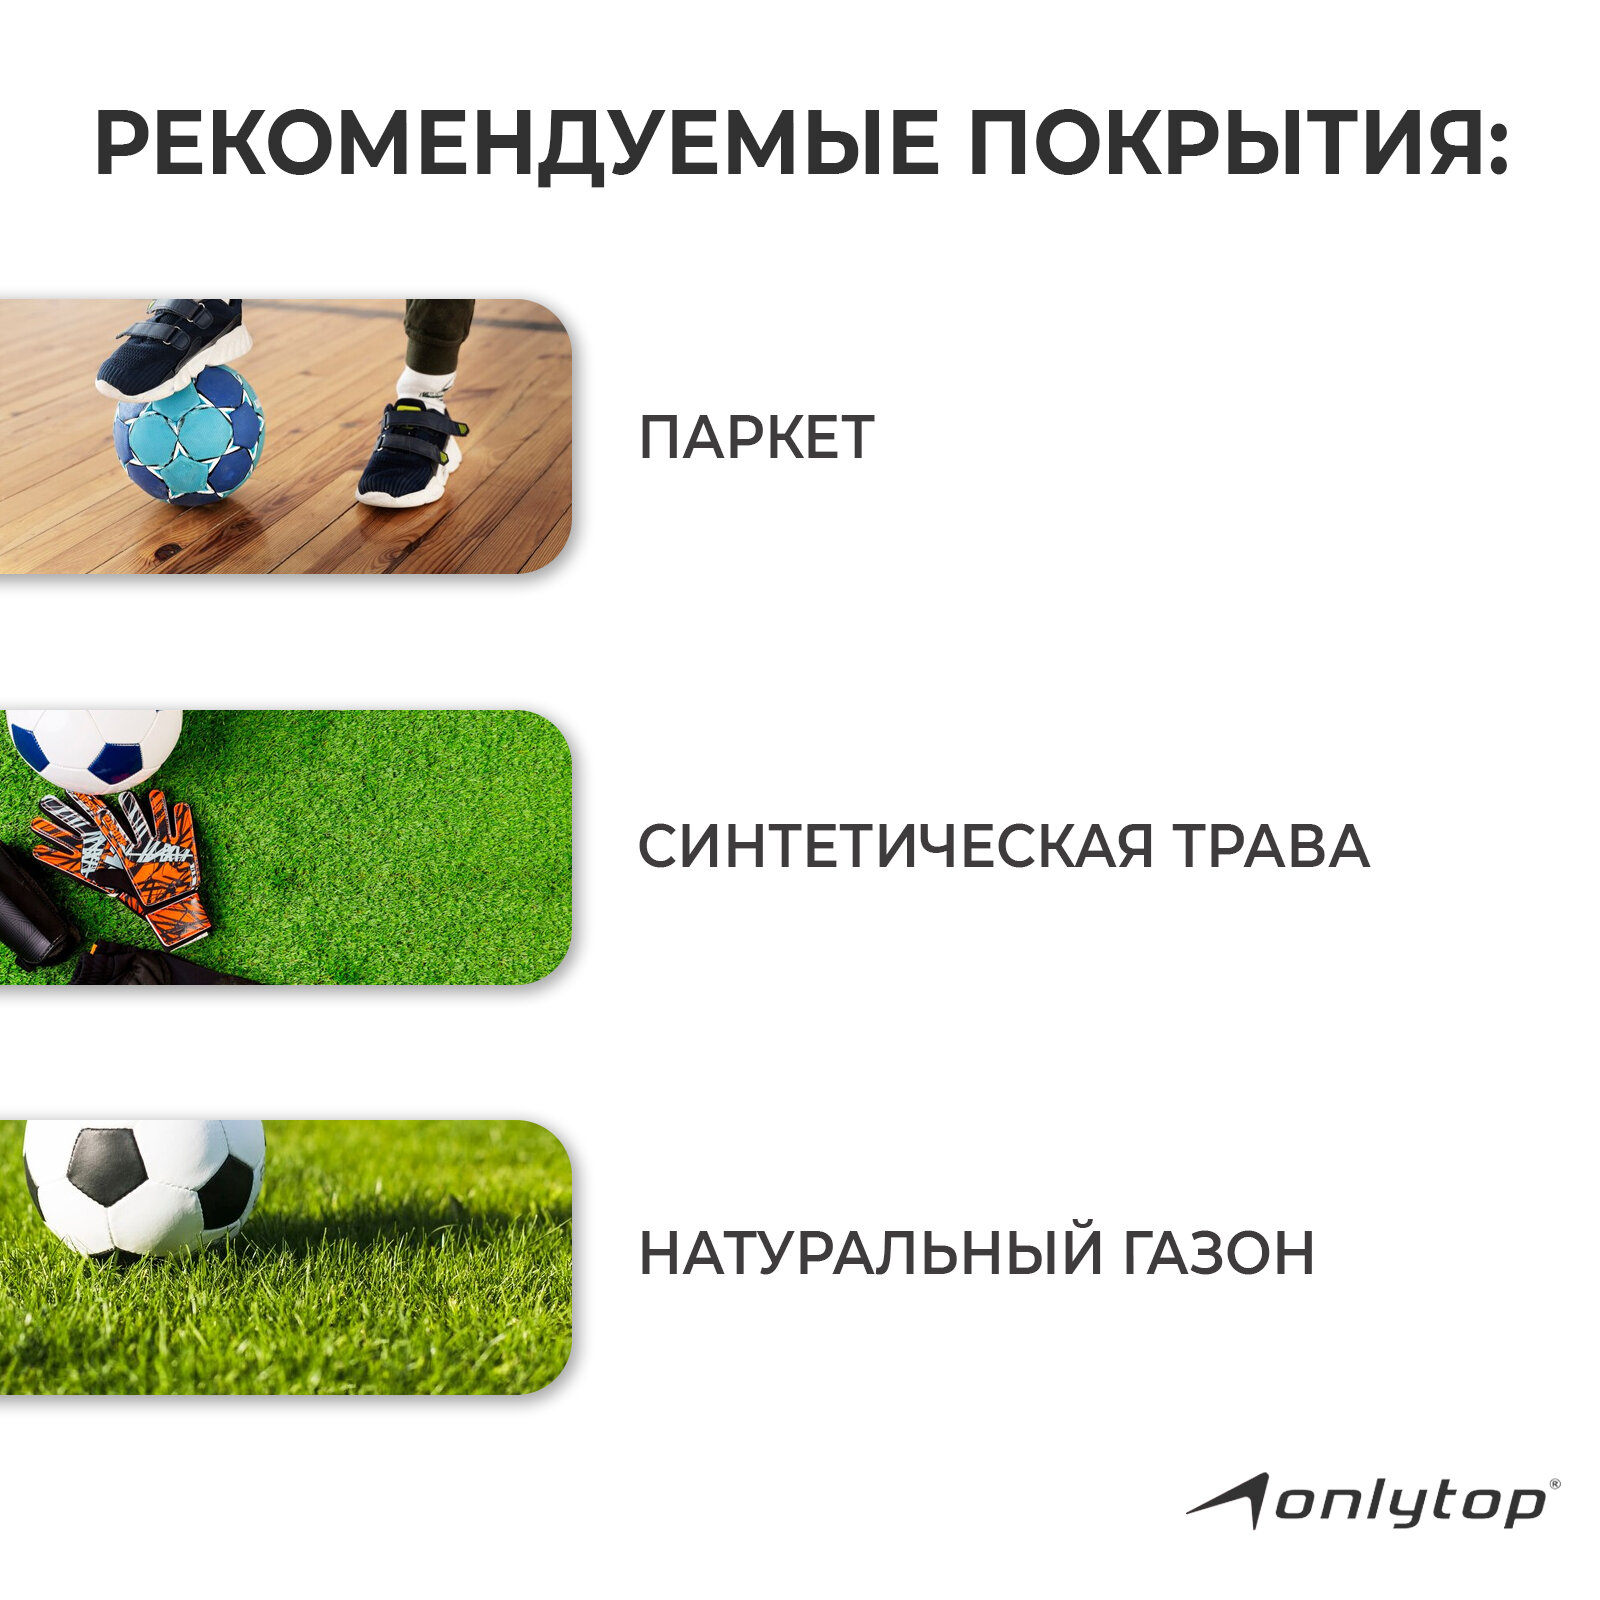 Мяч футбольный ONLITOP «Крутой футболист», размер 5, 32 панели, PVC, 2 подслоя, машинная сшивка, вес 280 г, цвет белый, черный, красный